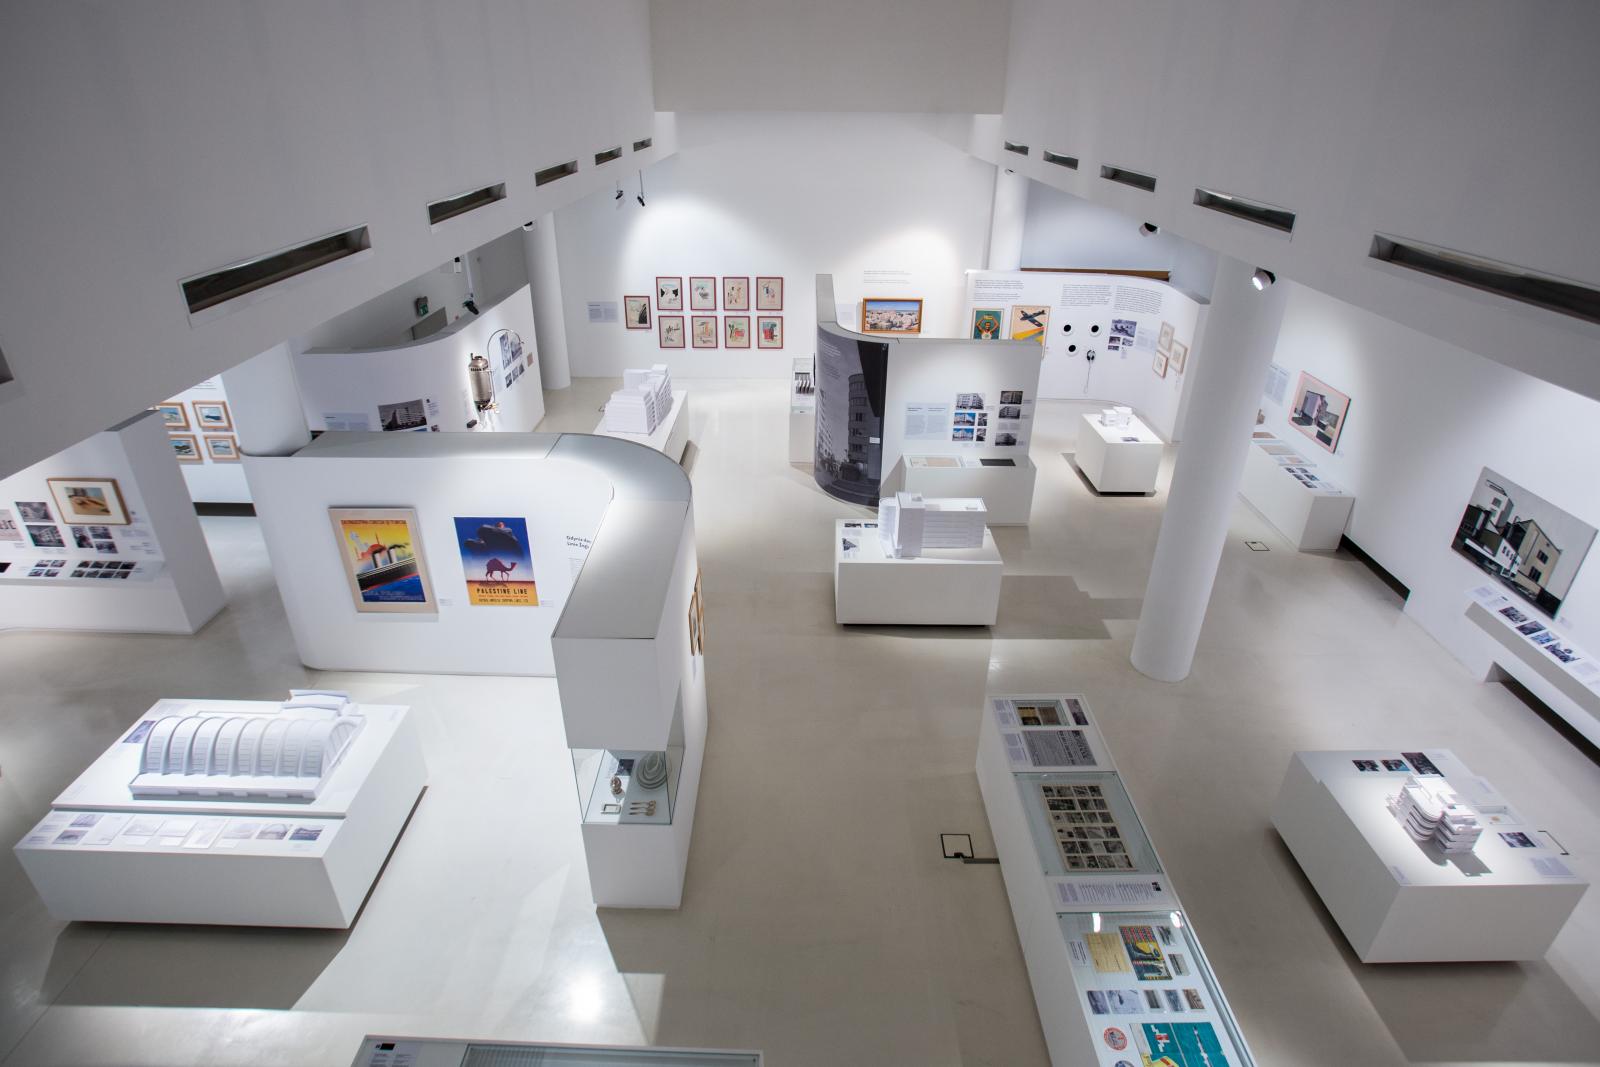 Wystawa czasowa "Gdynia - Tel Awiw" w Muzeum POLIN. Na zdjęciu widok wystawy z góry. Można oglądać białe ścianki działowe, gabloty z prezentowanymi przedmiotami, plakaty i obrazy